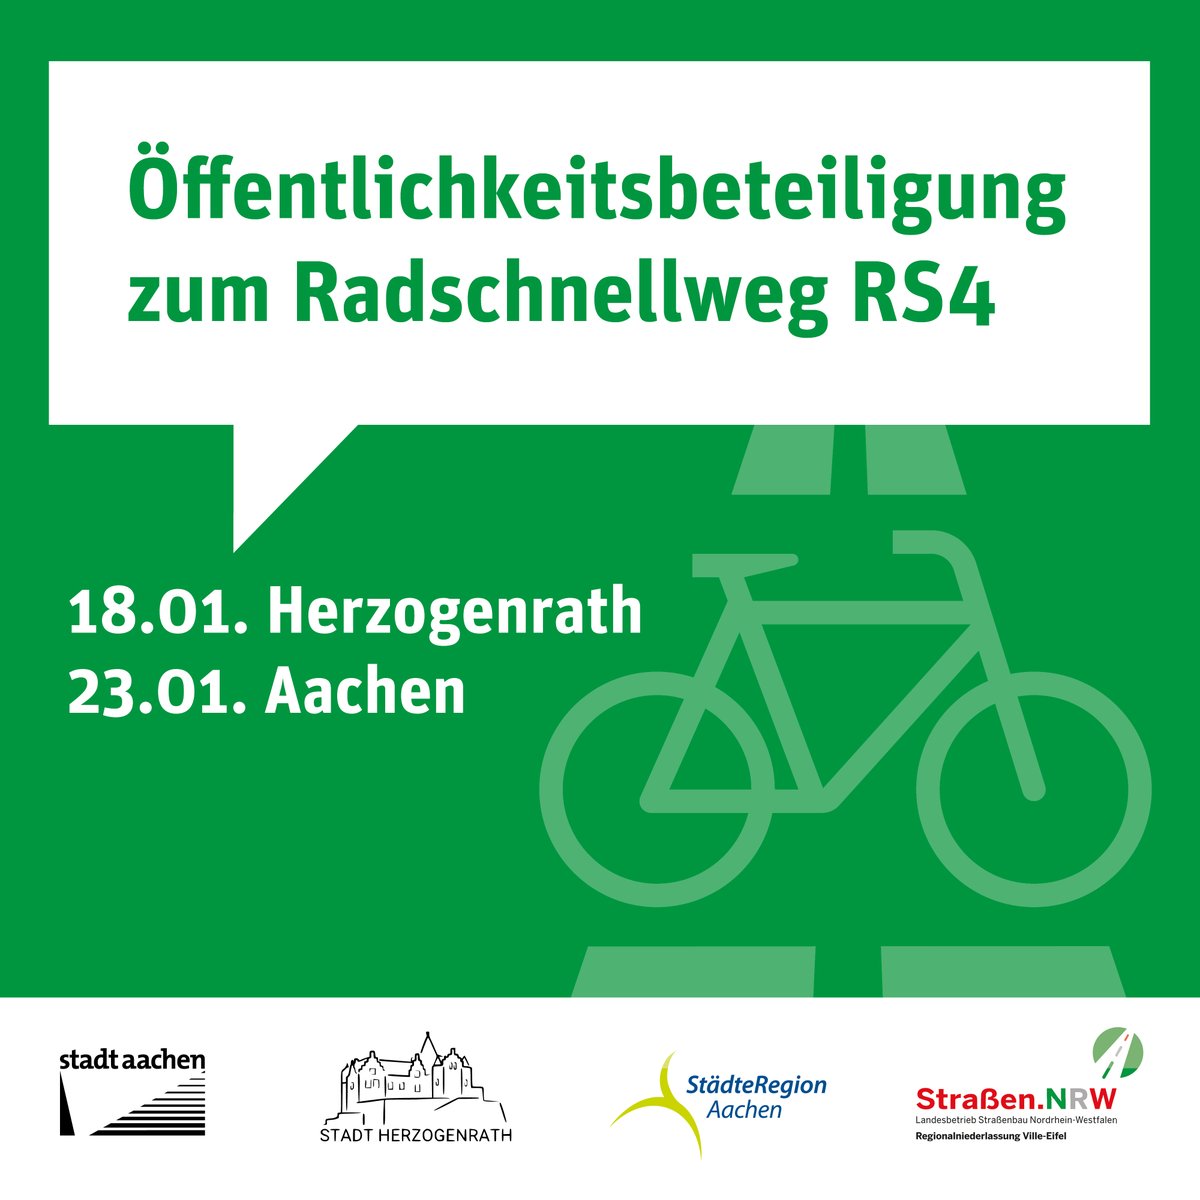 🚲 Radschnellweg RS4 zwischen Aachen und Herzogenrath: Hier könnt ihr euch informieren! 🚲

Am Dienstag, 23. Januar, 17 bis 20 Uhr, findet eine Info-Veranstaltung in der Aula des Schulzentrums Laurensberg statt.

➡️ Weitere Infos: sohub.io/klx4